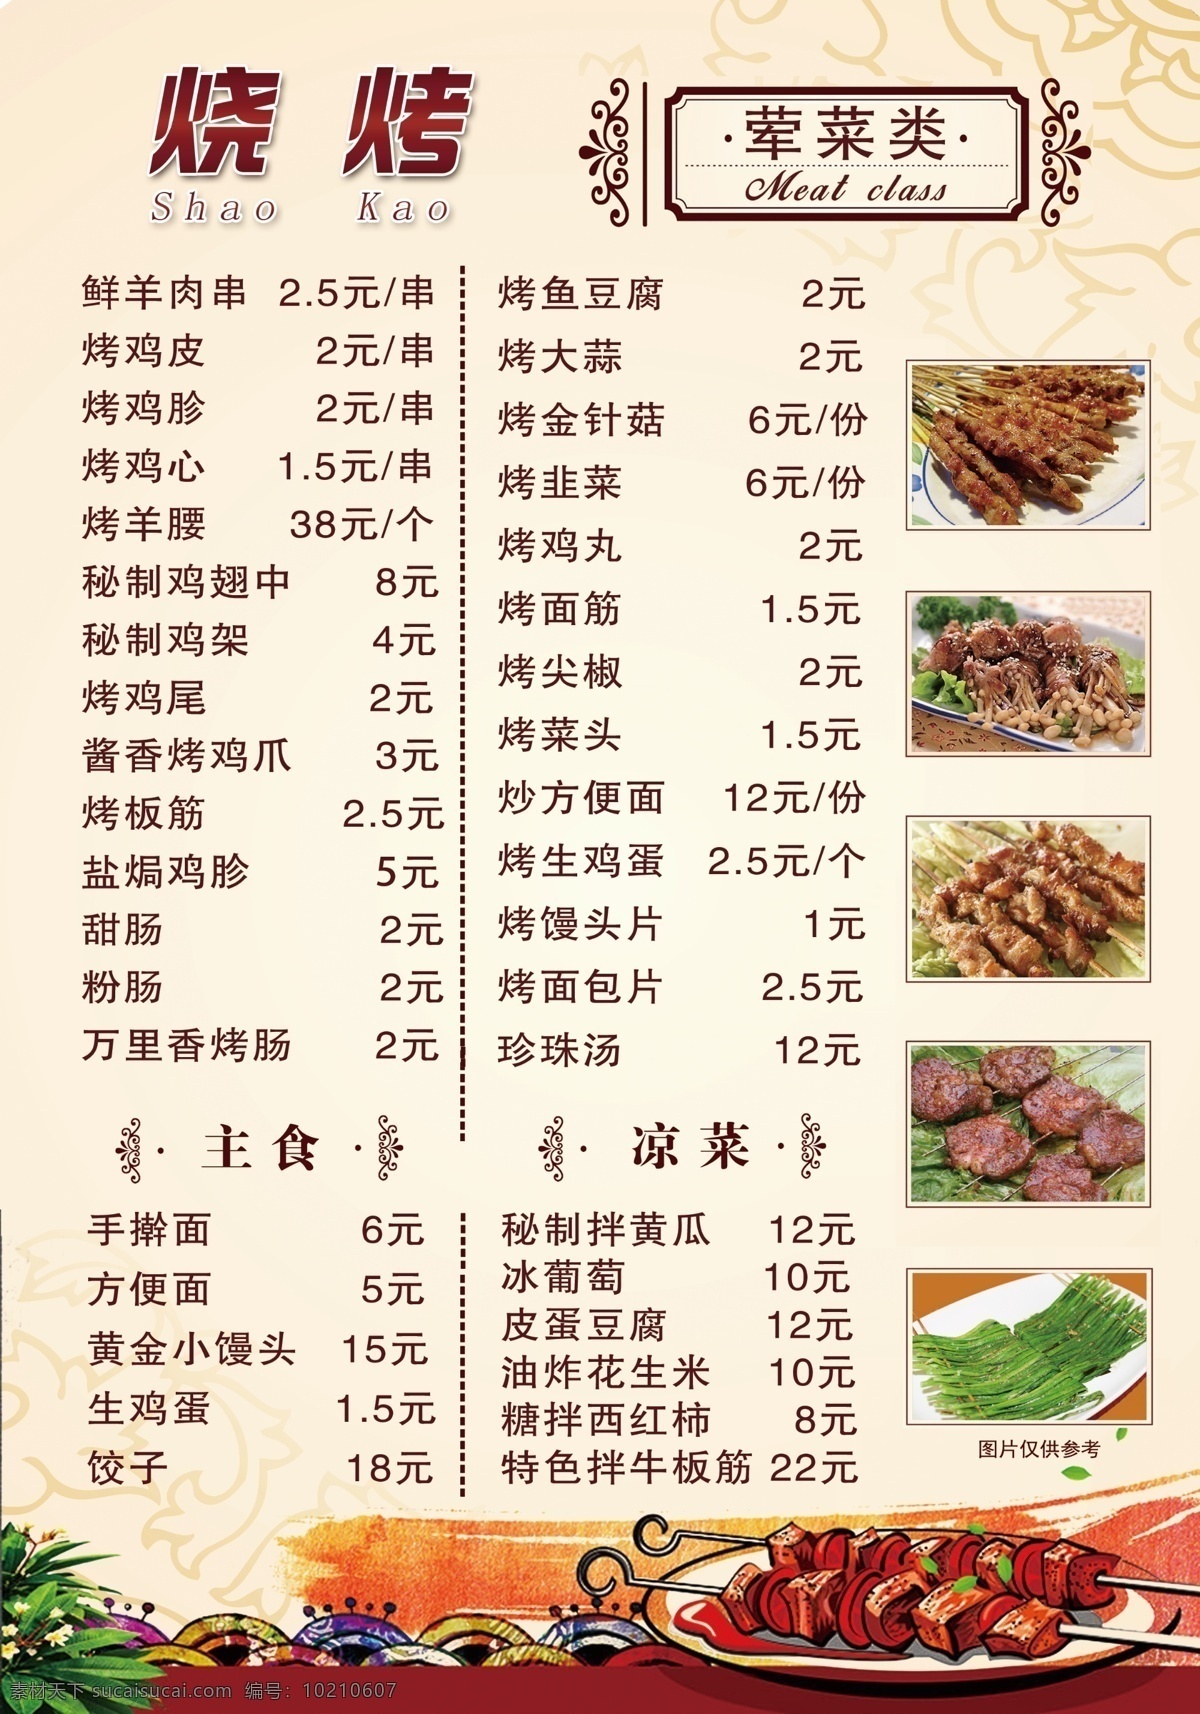 烧烤 价格表 烧烤价格表 烧烤菜单 菜单 菜单背景 价格表背景